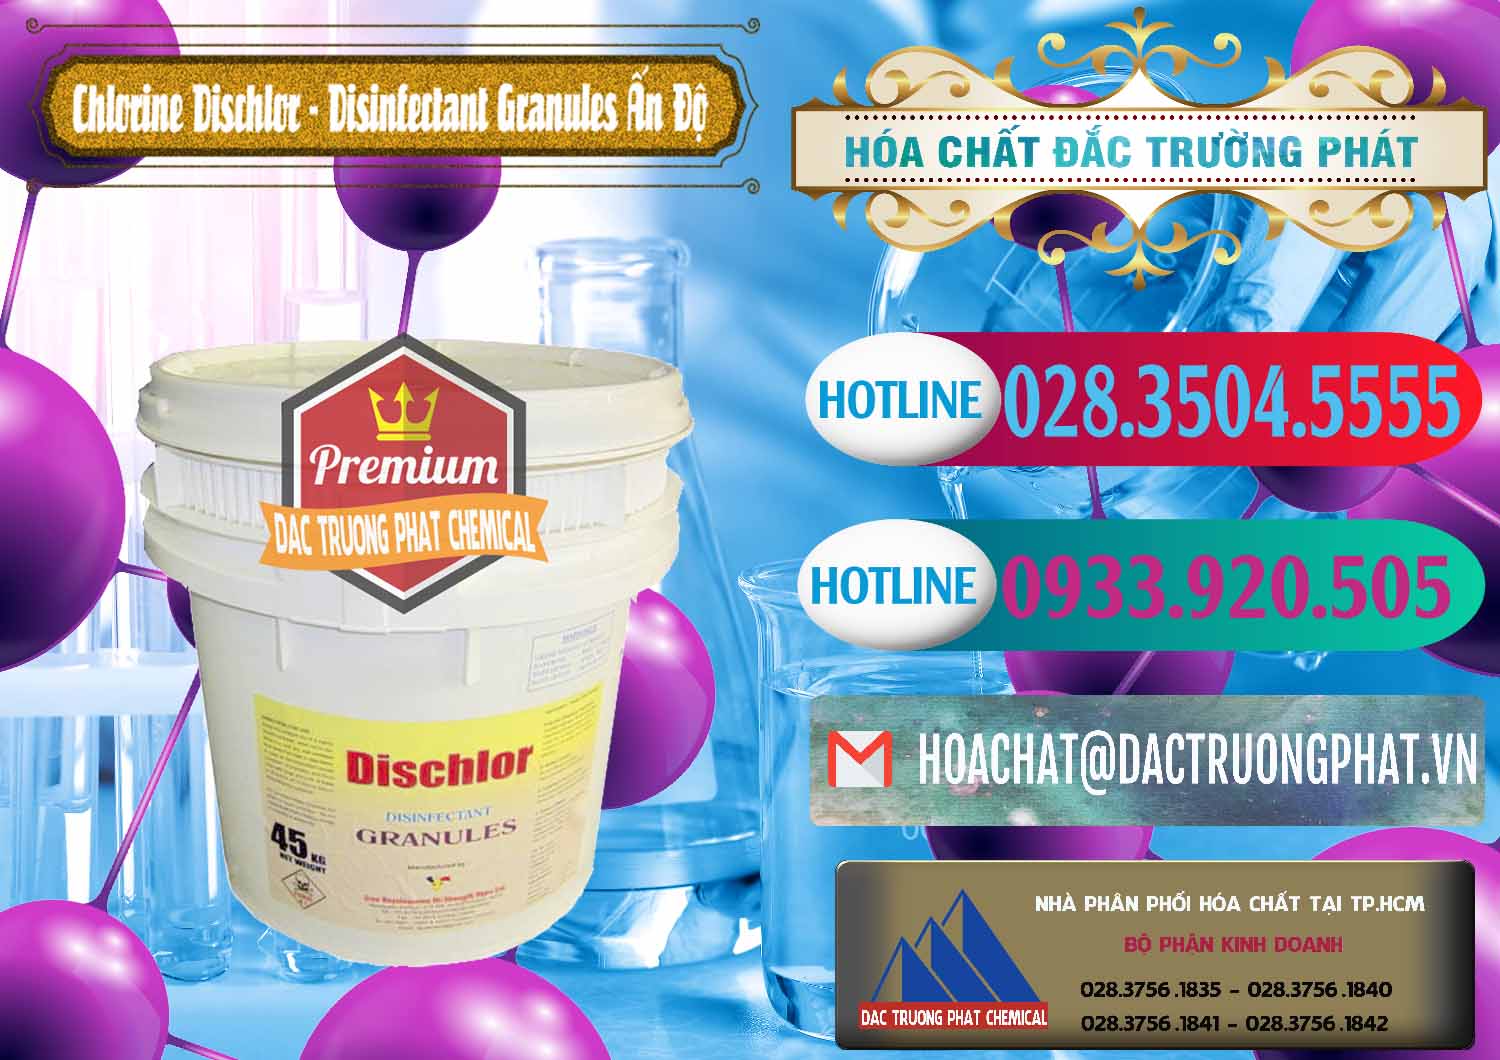 Kinh doanh và bán Chlorine – Clorin 70% Dischlor - Disinfectant Granules Ấn Độ India - 0248 - Cty chuyên kinh doanh ( phân phối ) hóa chất tại TP.HCM - truongphat.vn